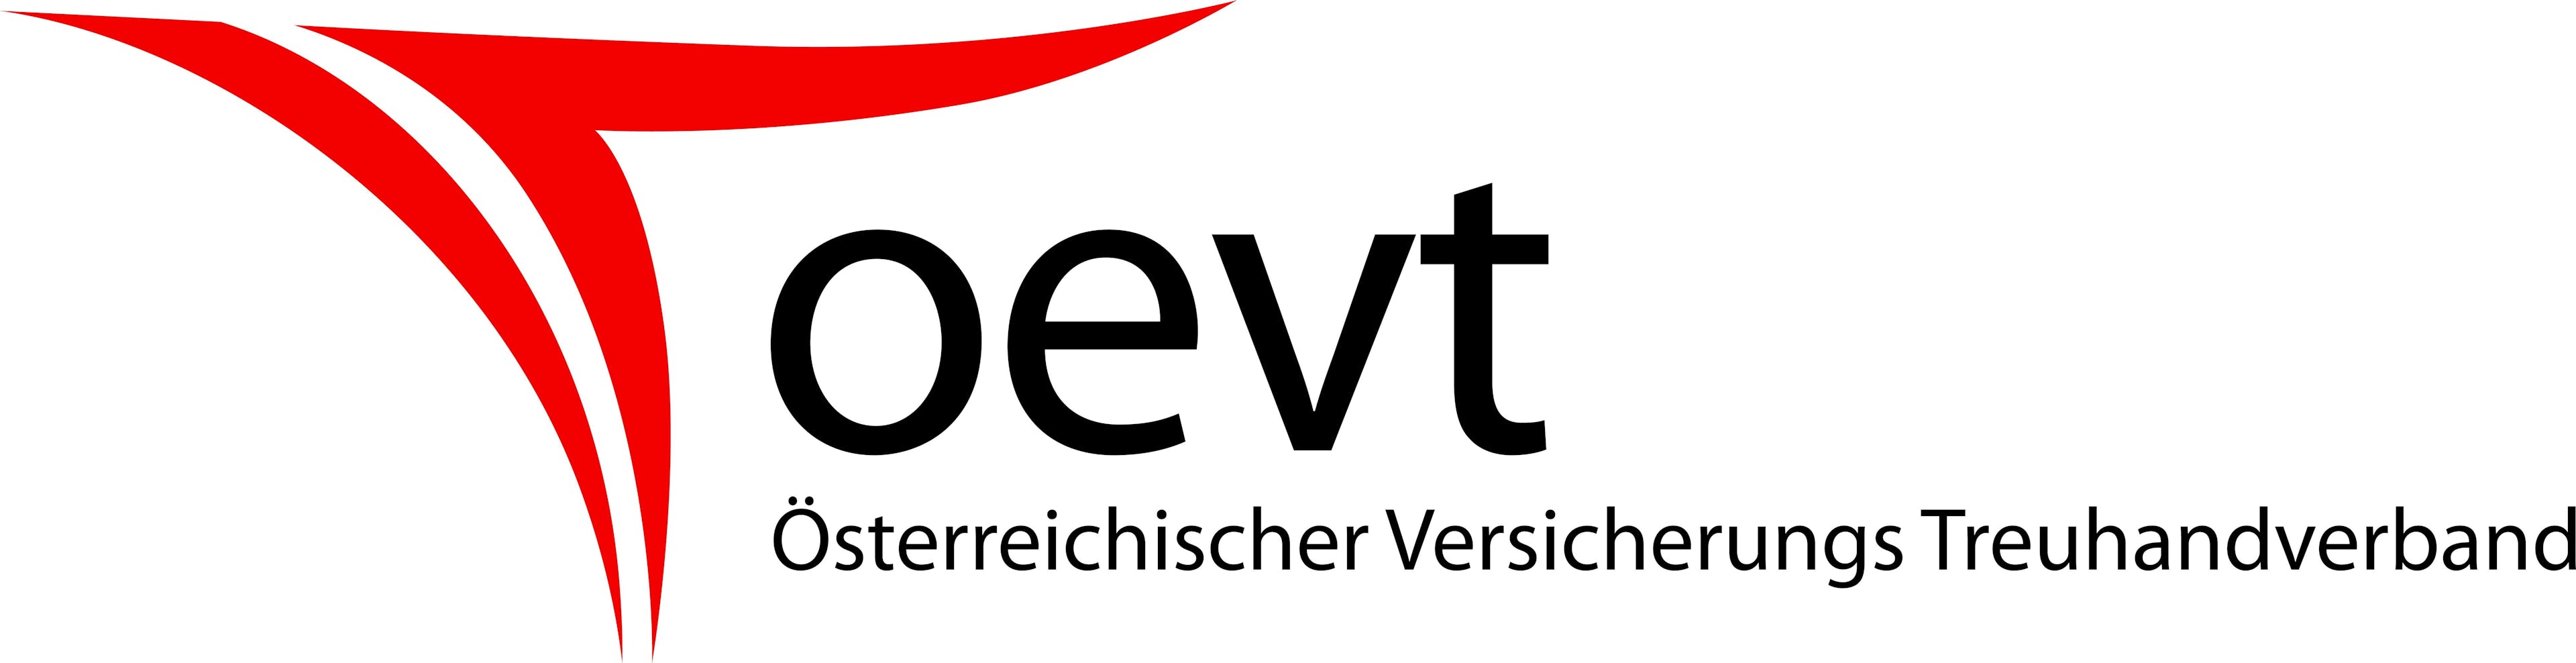 ÖVT - Verband Österreichischer Versicherungstreuhänder und Mediatoren in Versicherungsangelegenheiten Teaser Logo